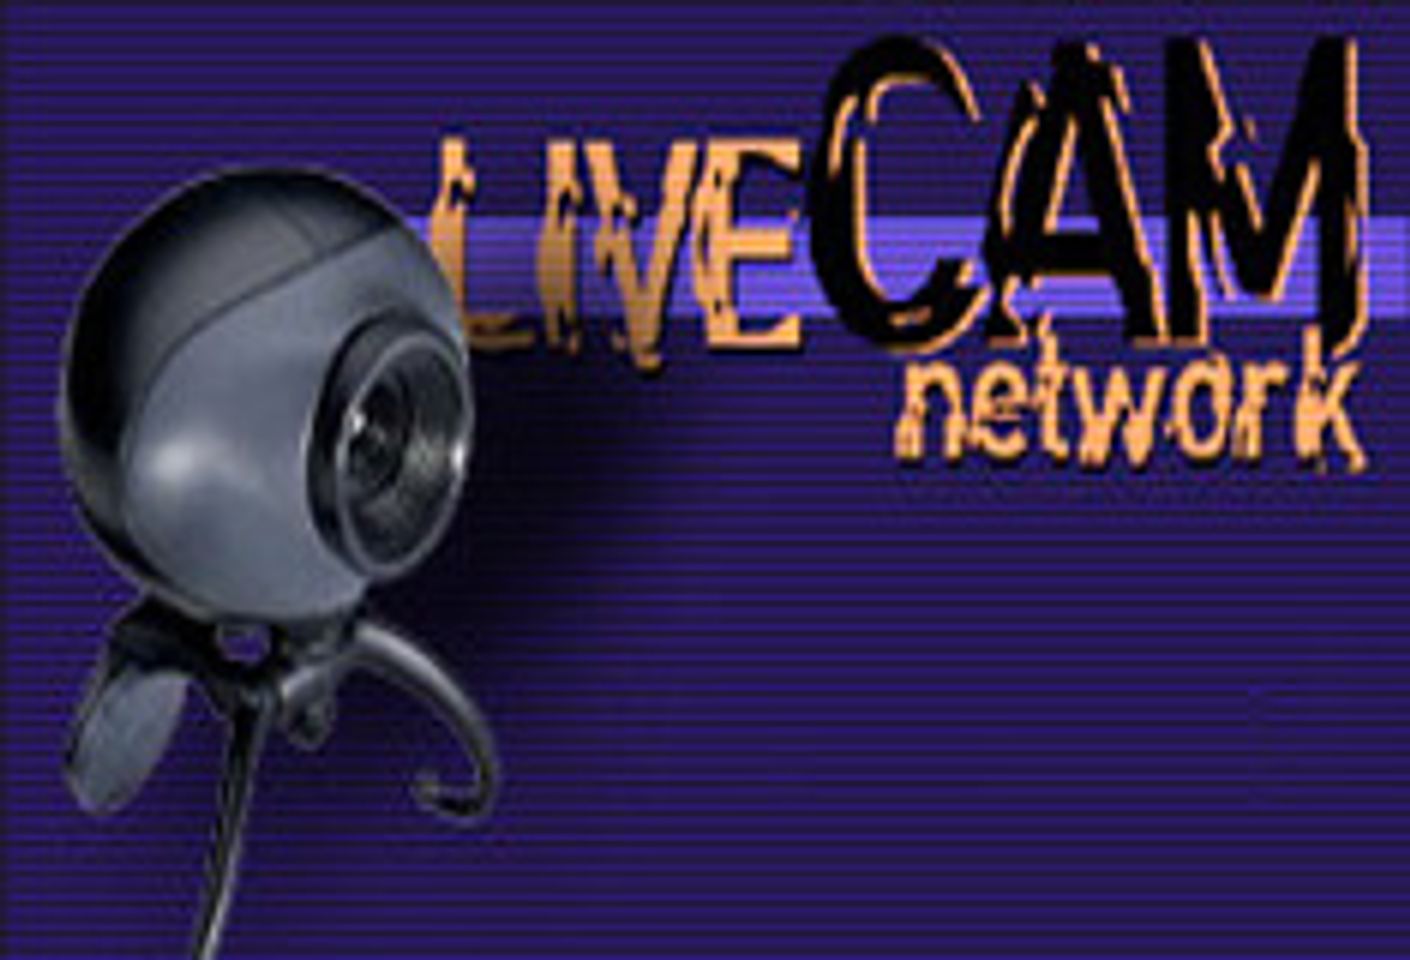 LiveCamNetwork.com Announces Live Video Shows